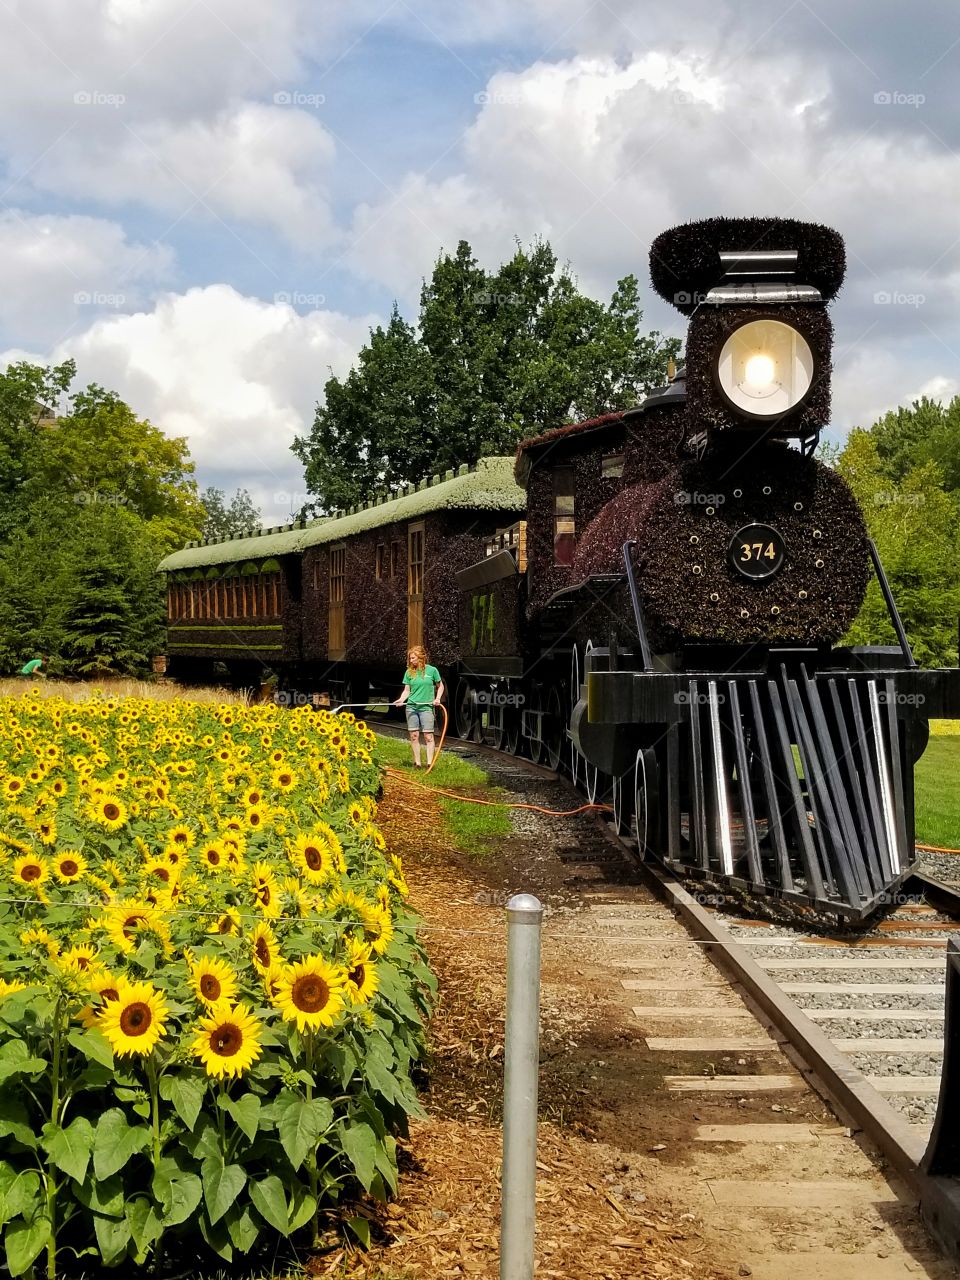 Train in the sunflower field